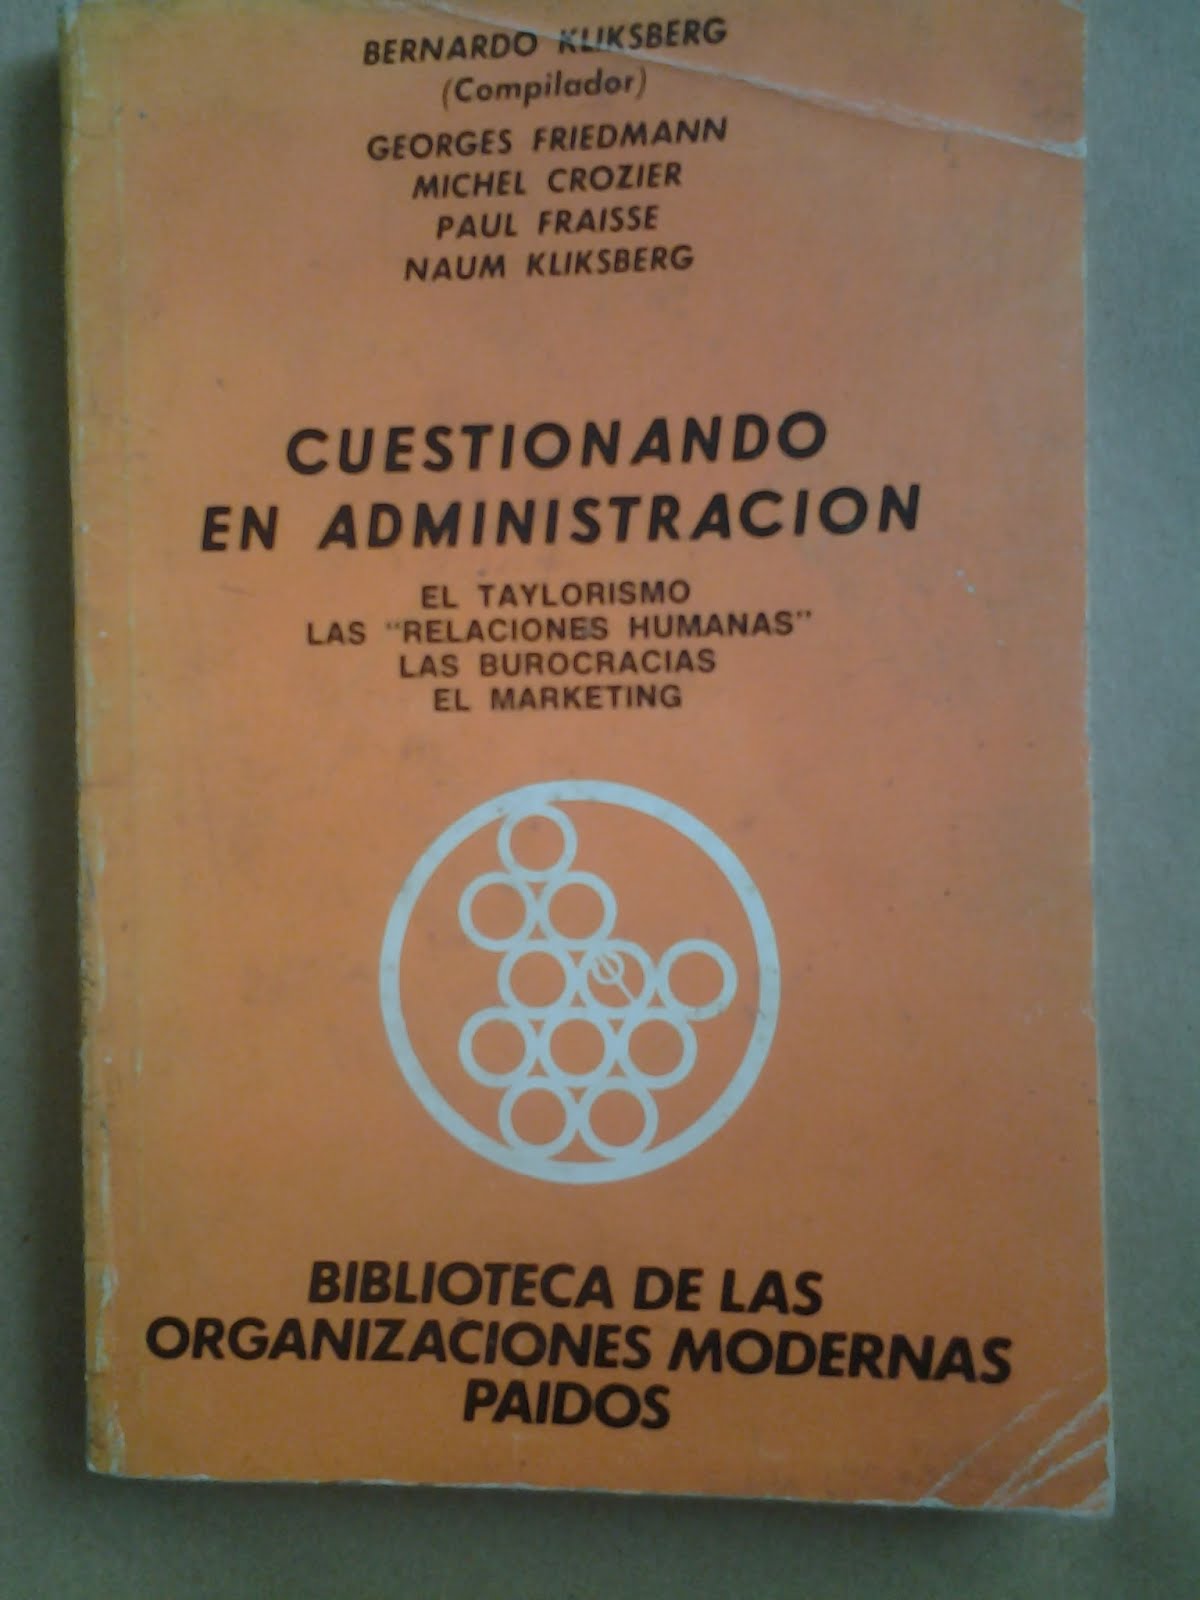 65 - Libro publicado por la Editorial Paidos. Argentina.1979.